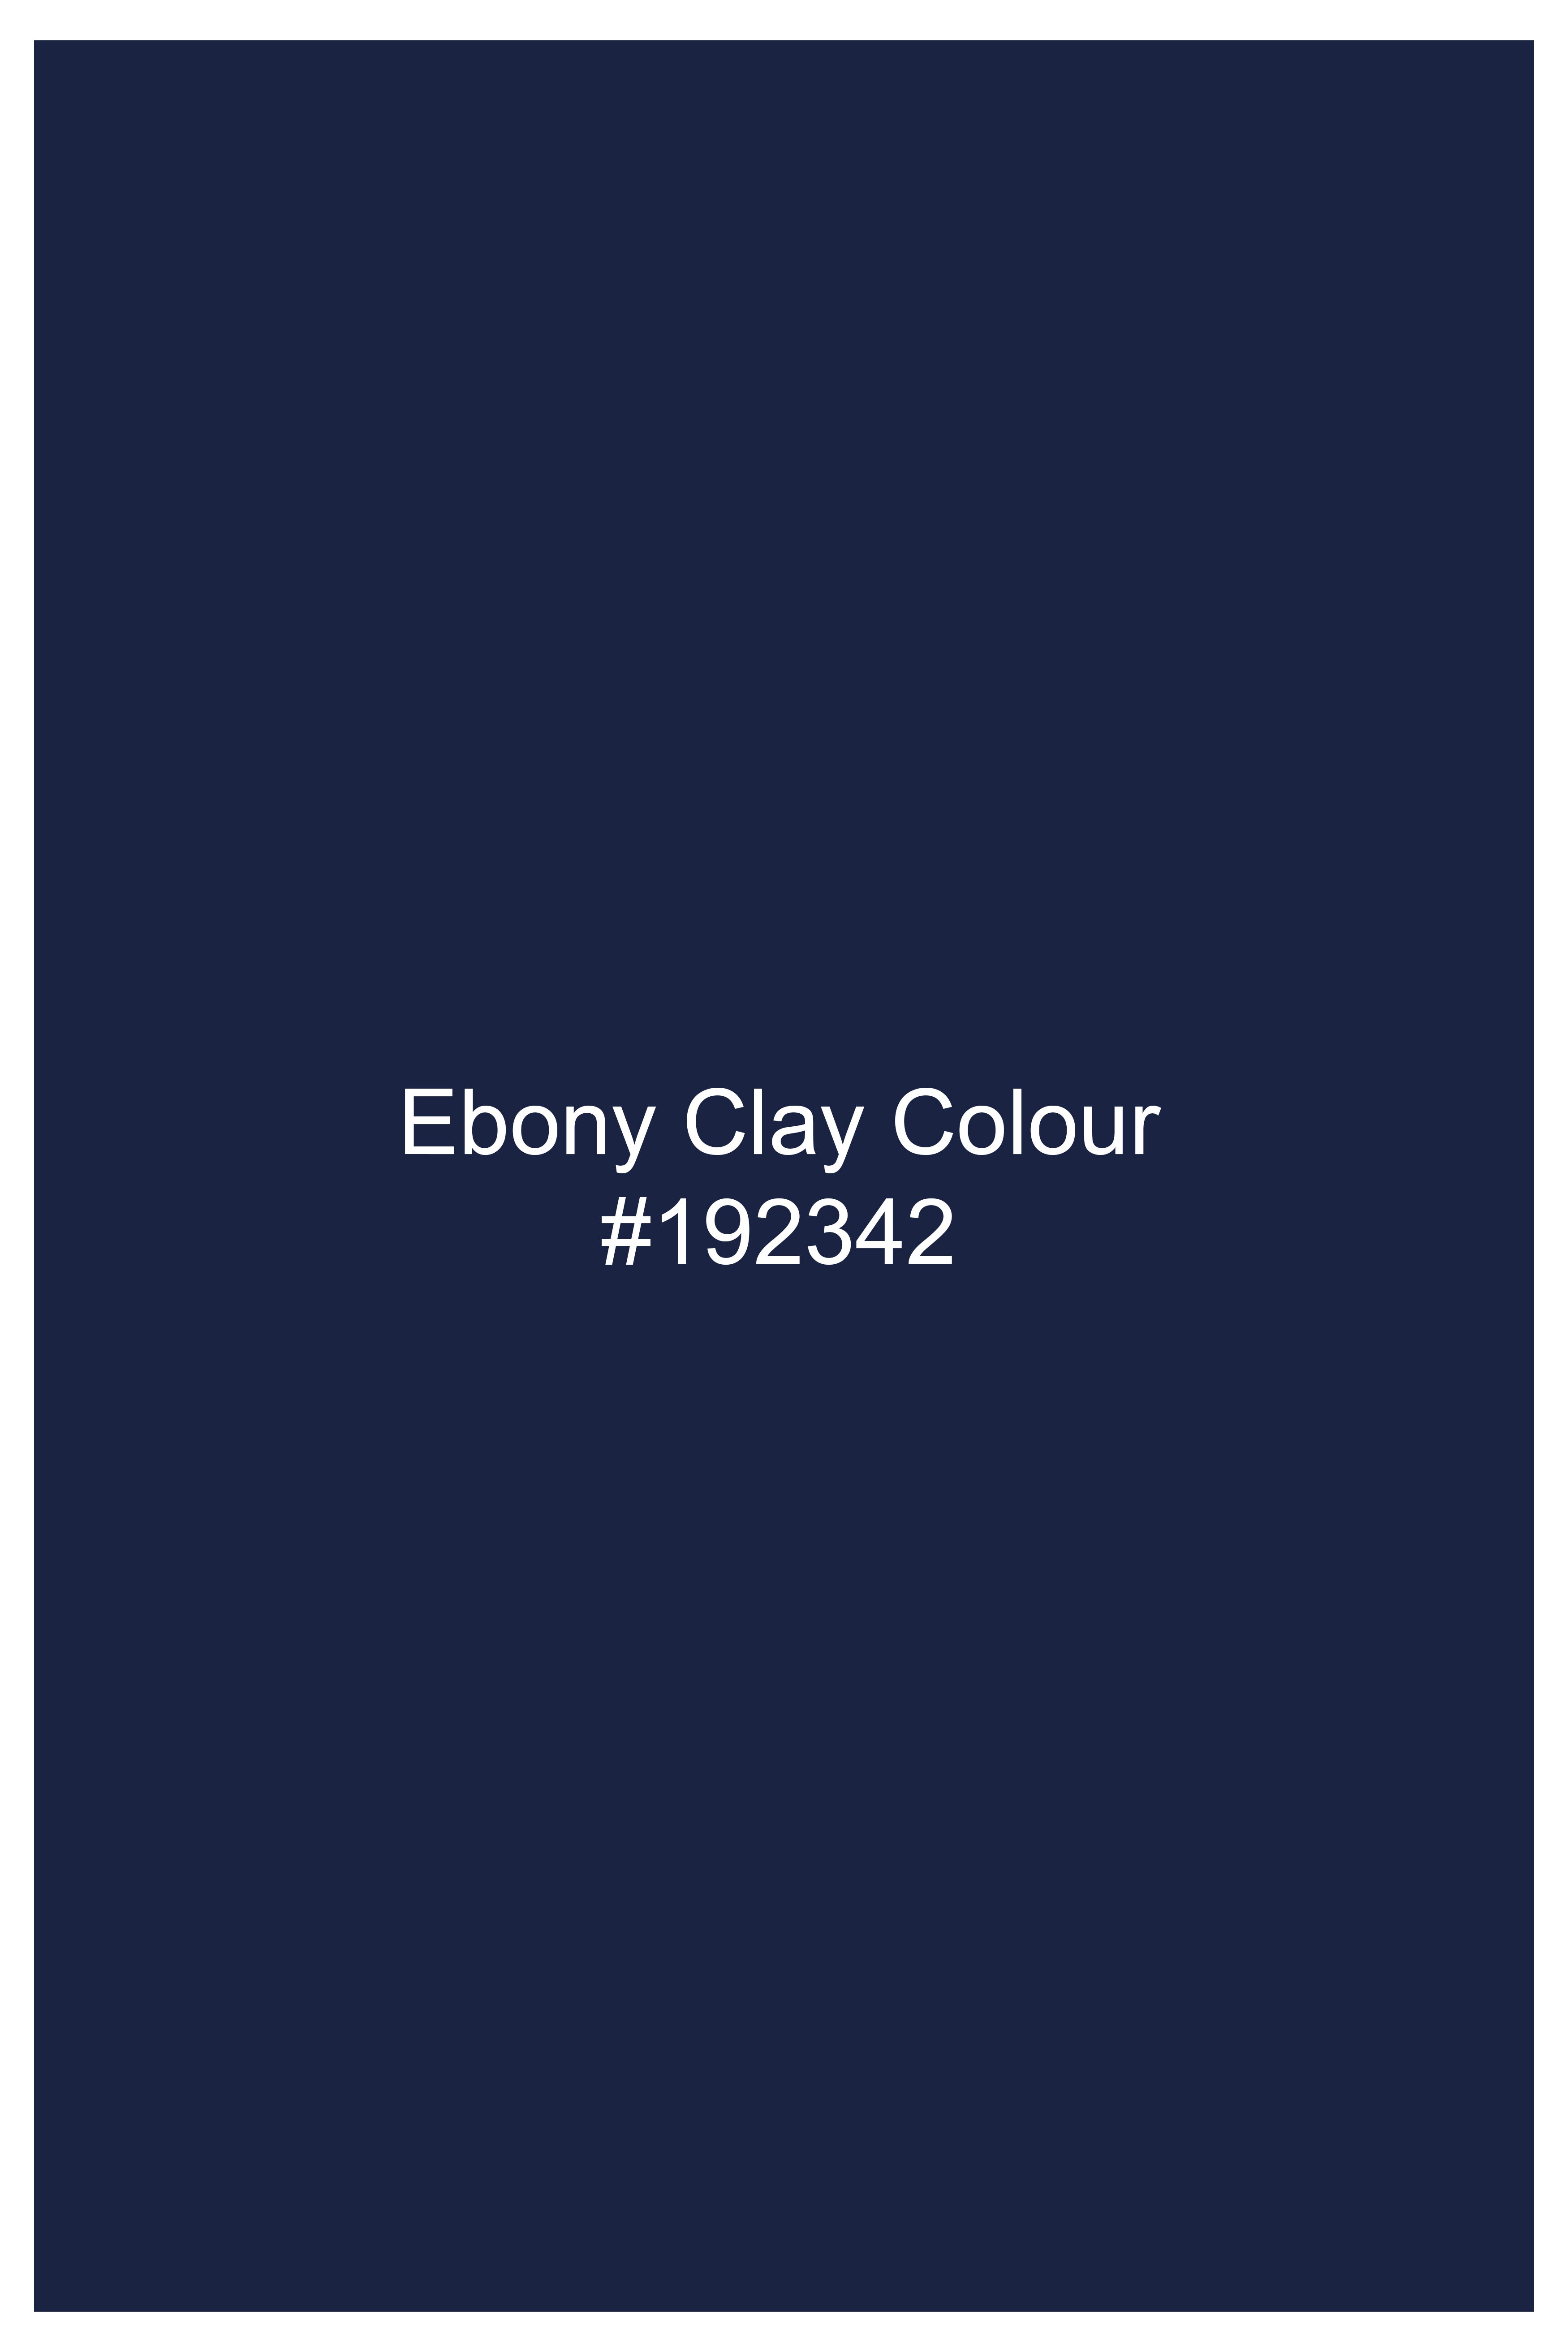 Ebony Clay Blue Striped Wool Rich Bandhgala Suit ST3088-BG-36, ST3088-BG-38, ST3088-BG-40, ST3088-BG-42, ST3088-BG-44, ST3088-BG-46, ST3088-BG-48, ST3088-BG-50, ST3088-BG-52, ST3088-BG-54, ST3088-BG-56, ST3088-BG-58, ST3088-BG-60